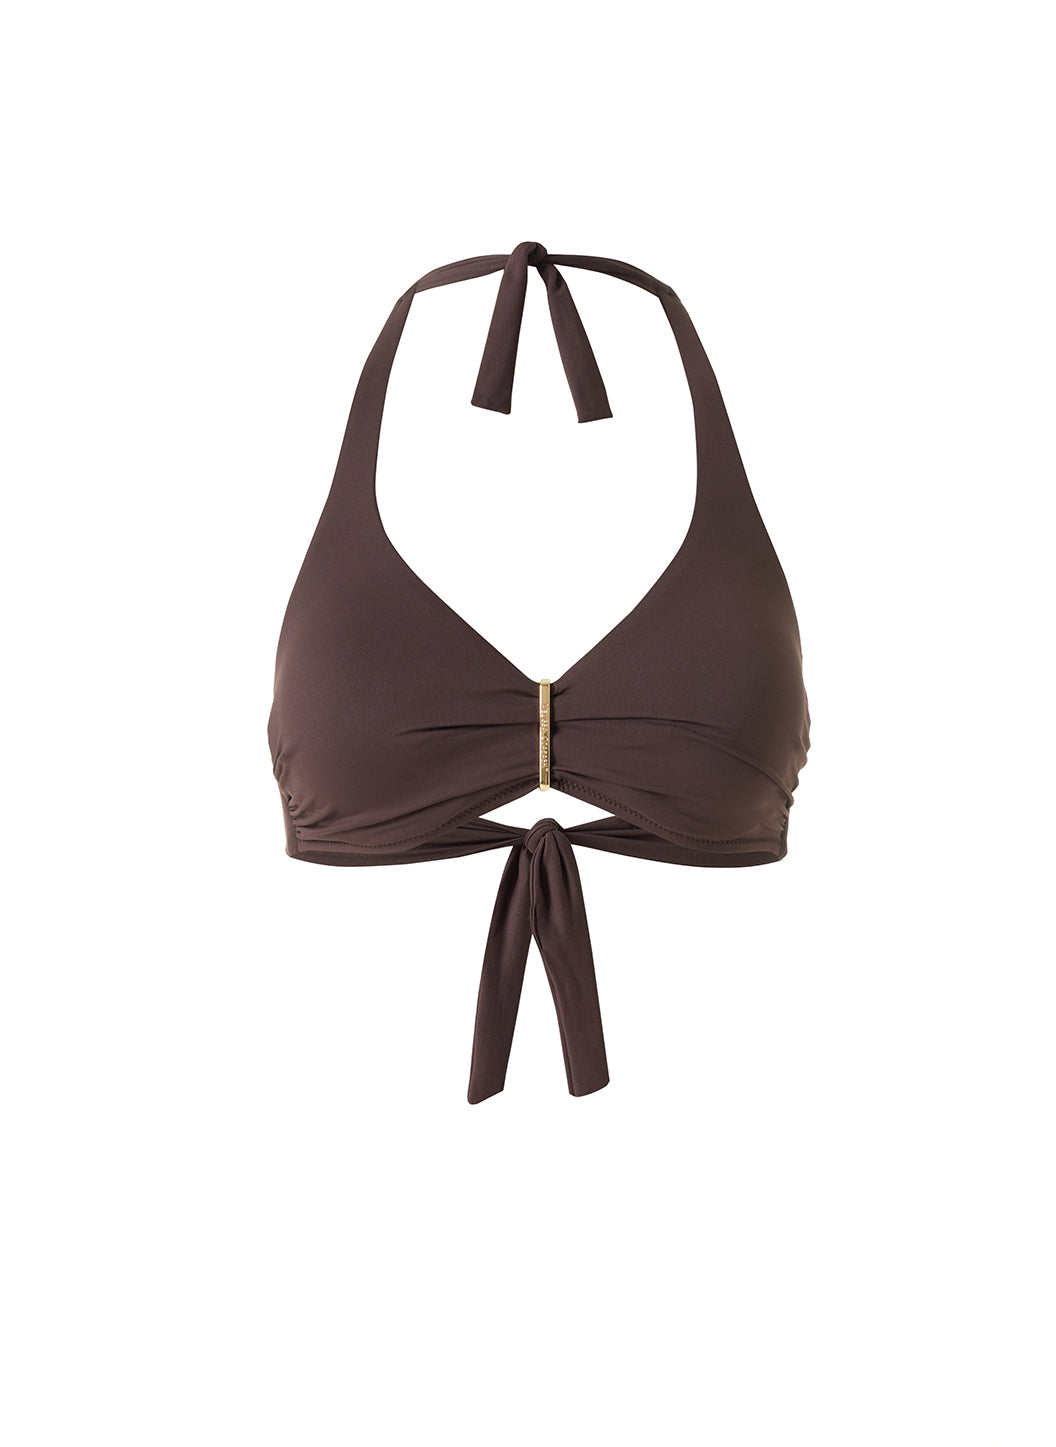 Provence Brown Bikini Top Cutout